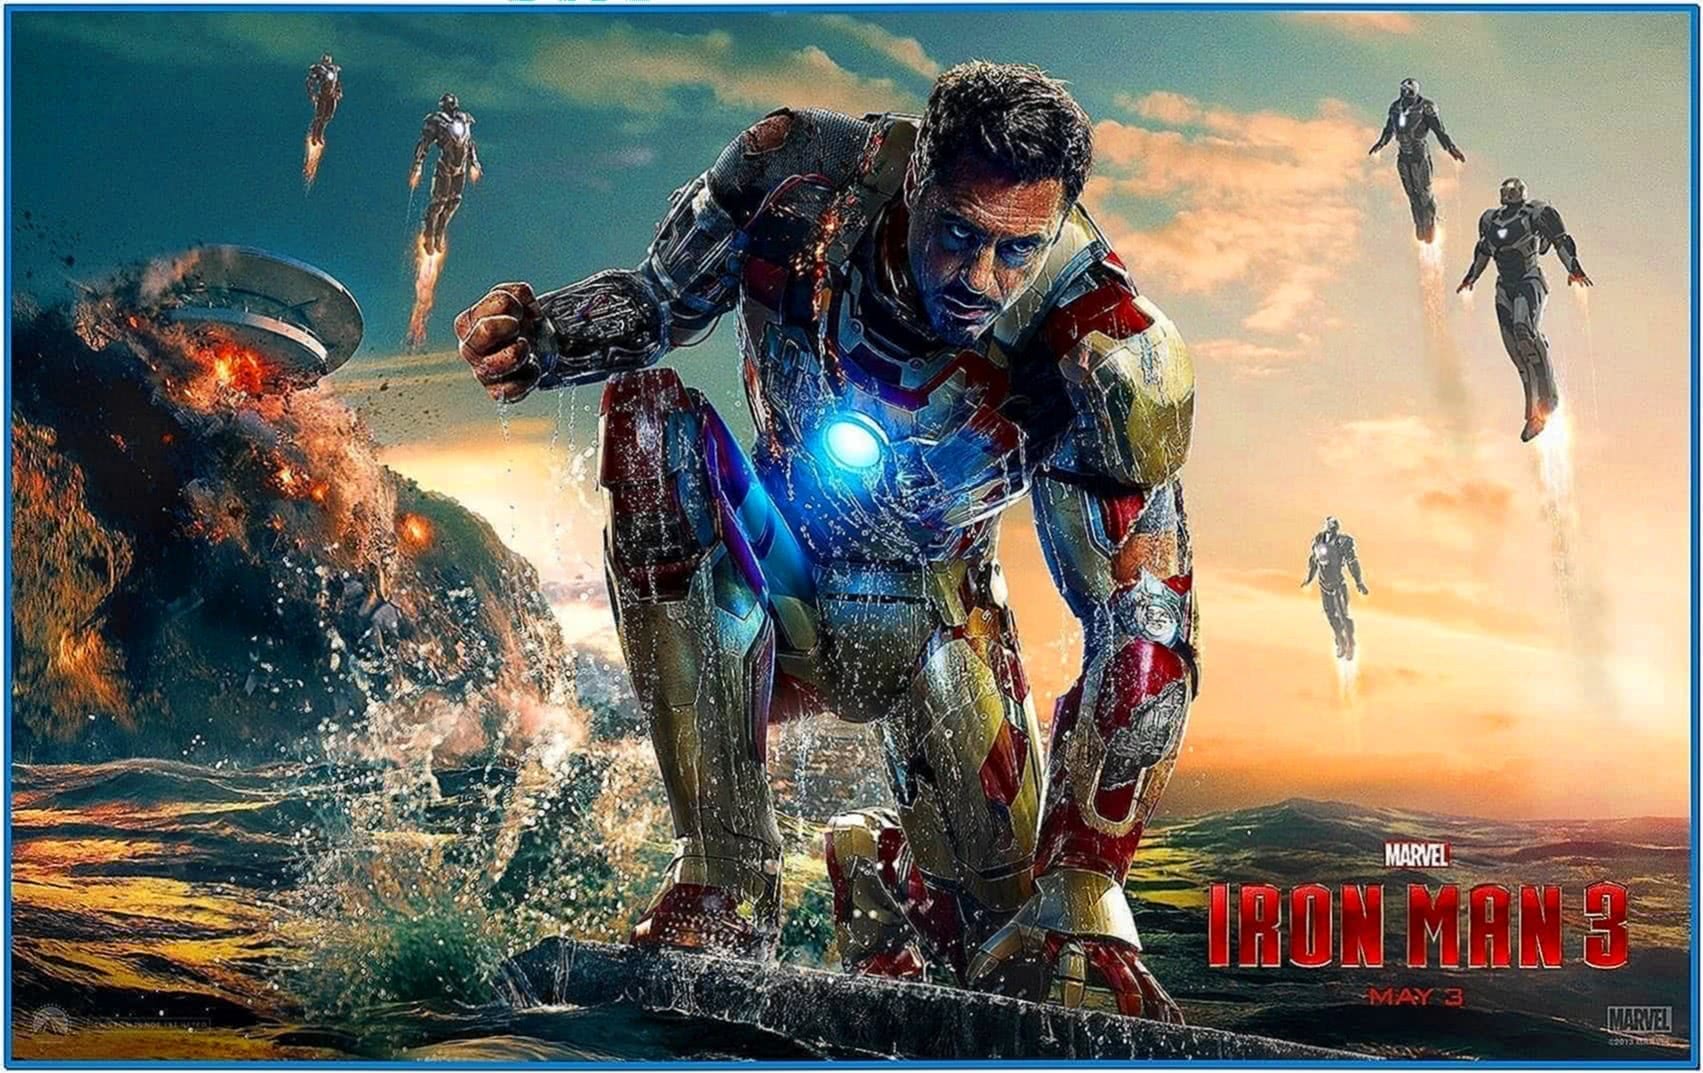 Screensaver Iron Man 3